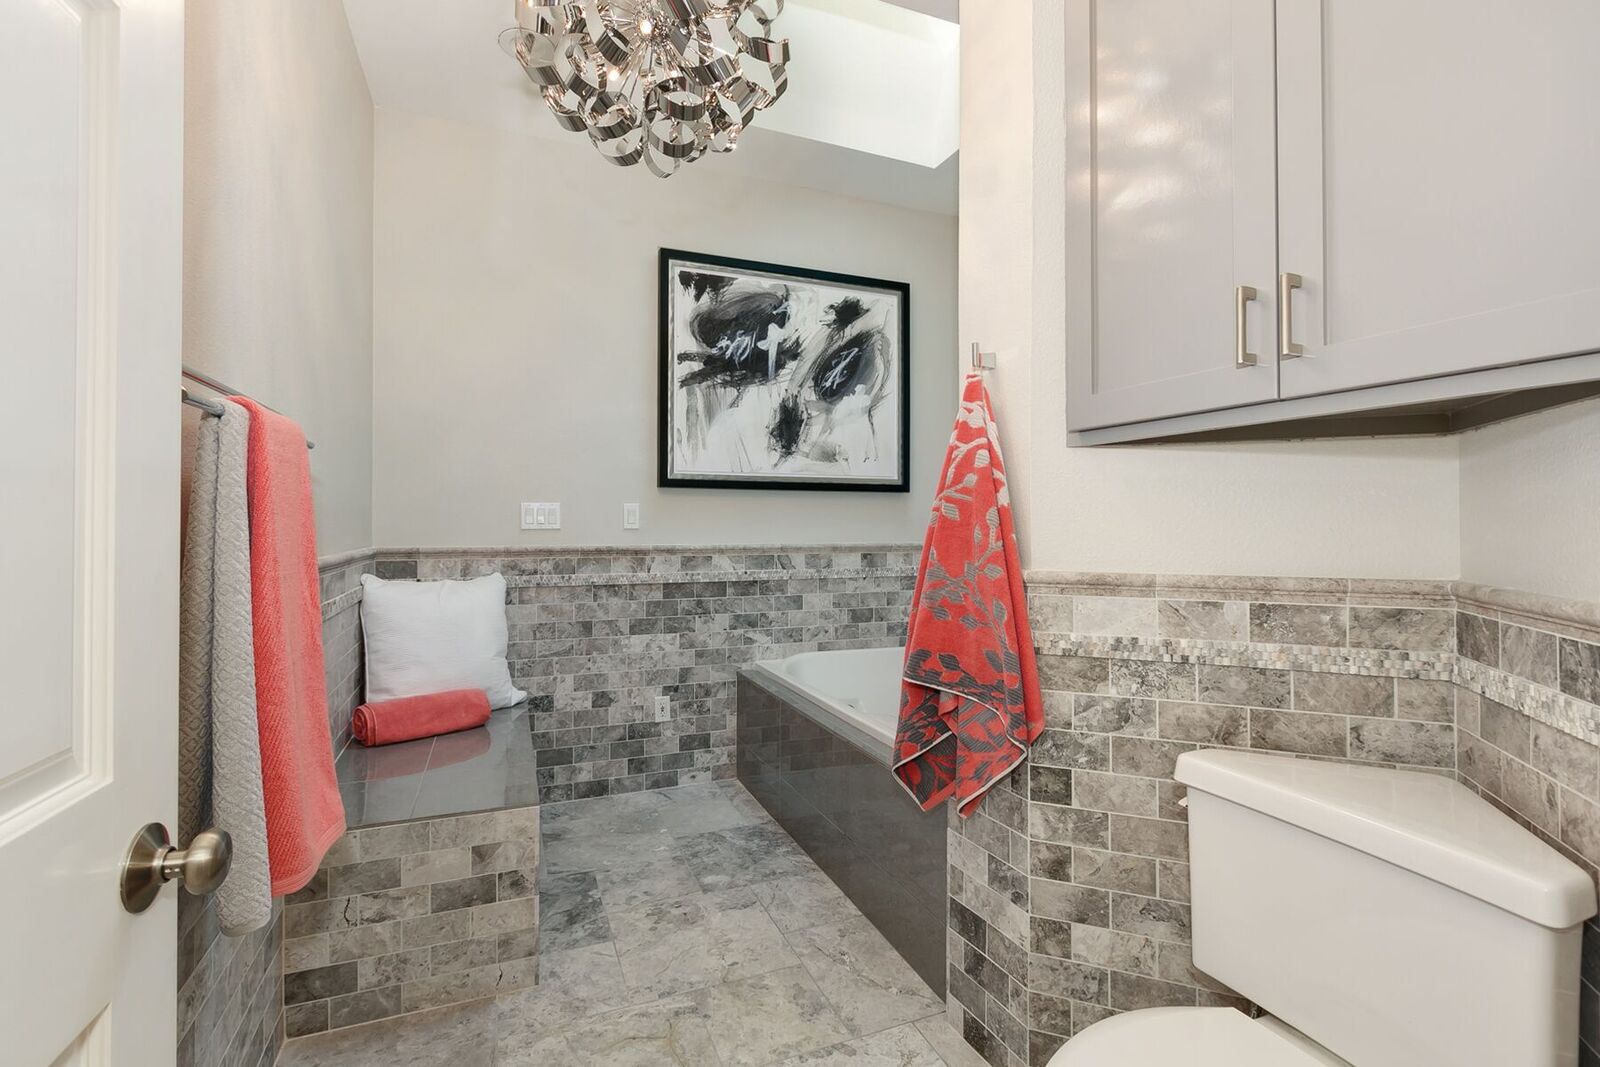 Bathroom Remodel Tile Design